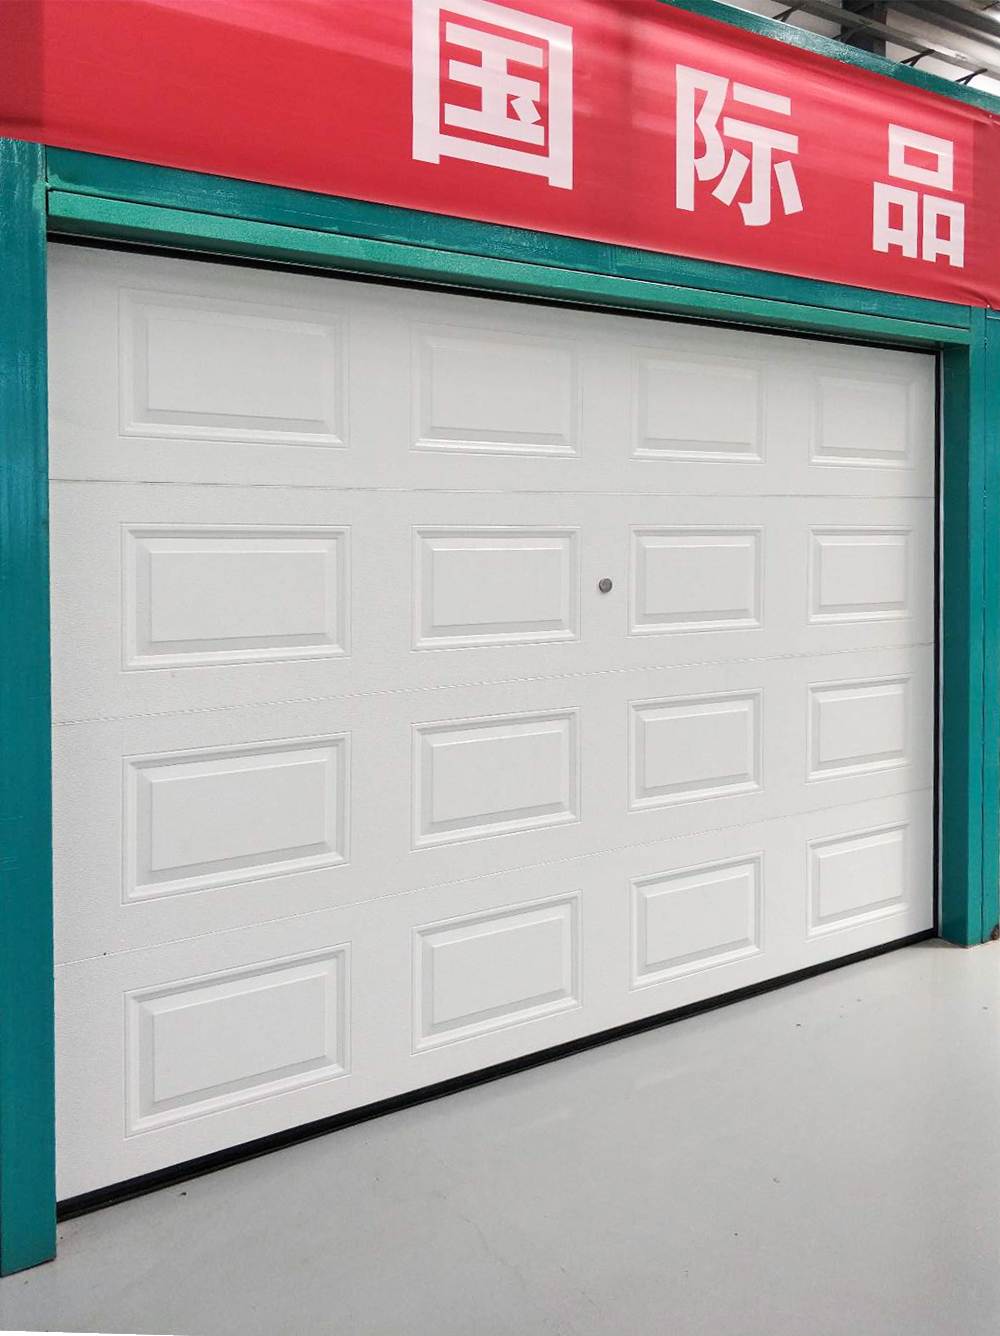 Комплект гаражных ворот из пенопласта с автоматическим контролем перематывания для дома